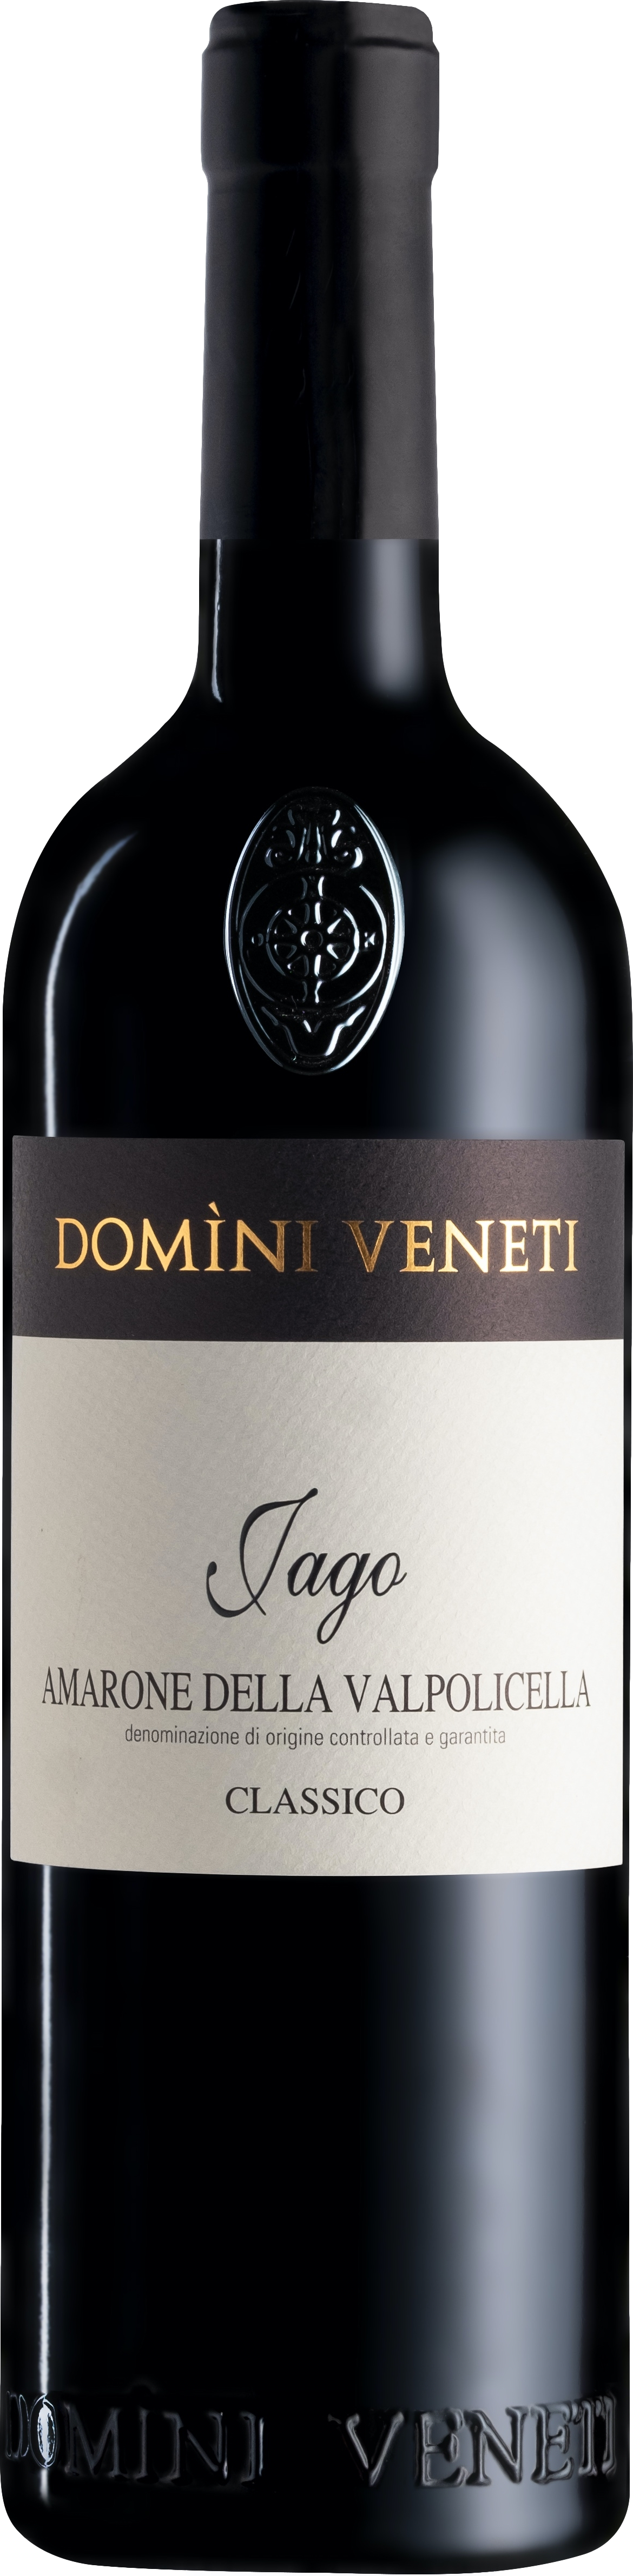 Domini Veneti Vigneti di Jago Amarone della Valpolicella Classico 2017 Domini Veneti 8wines DACH